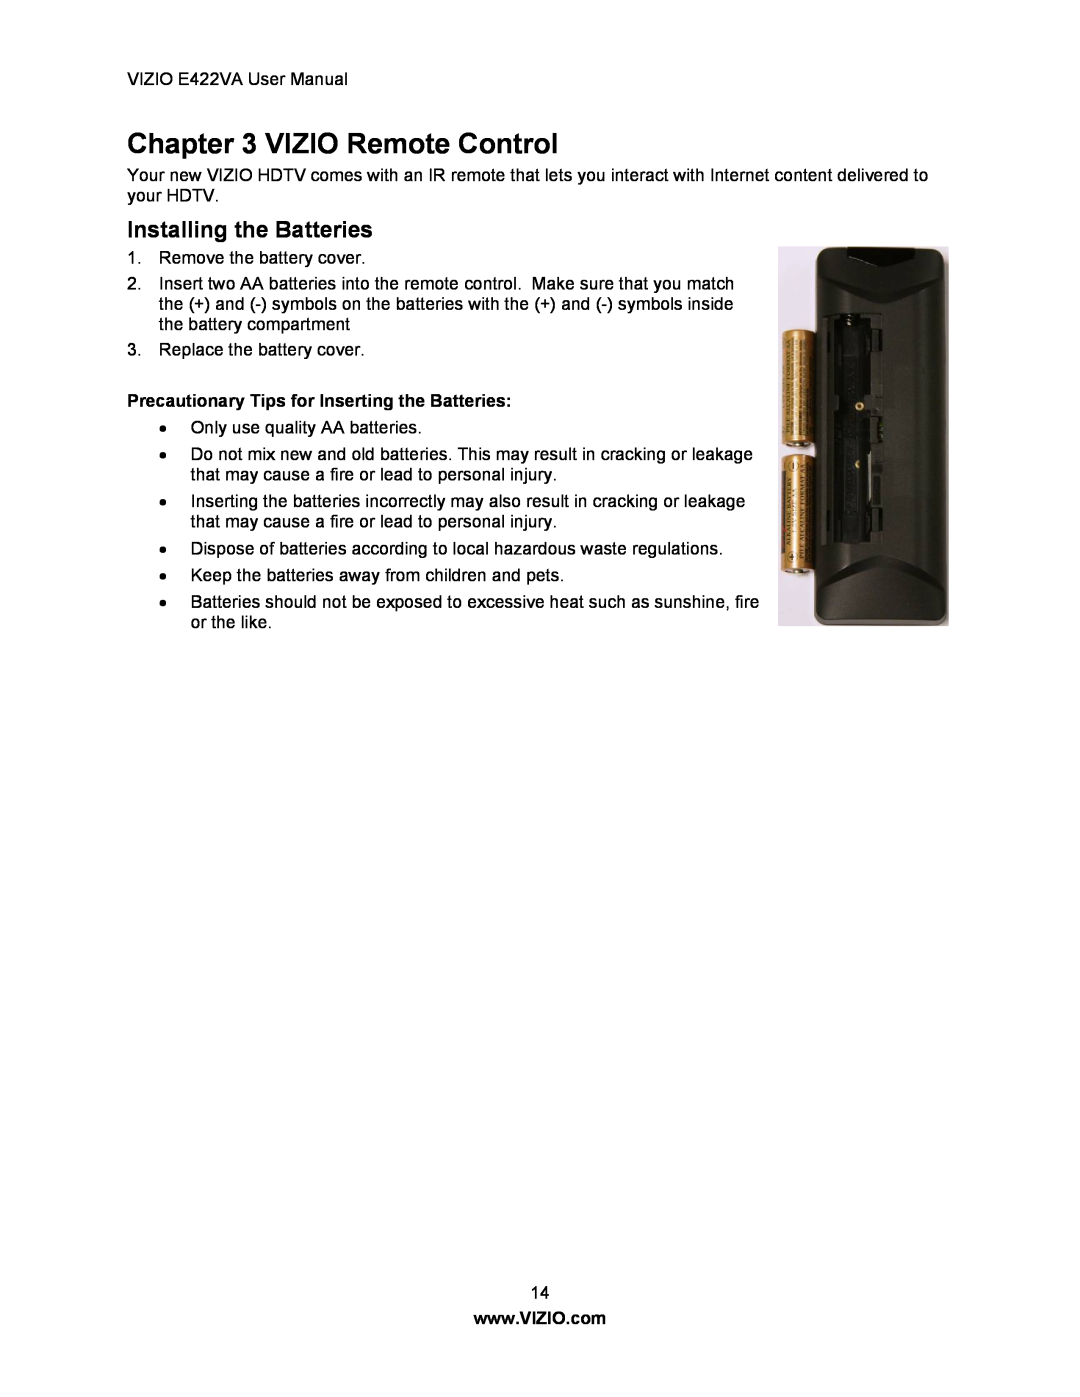 Xerox E422VA user manual VIZIO Remote Control, Installing the Batteries, Precautionary Tips for Inserting the Batteries 